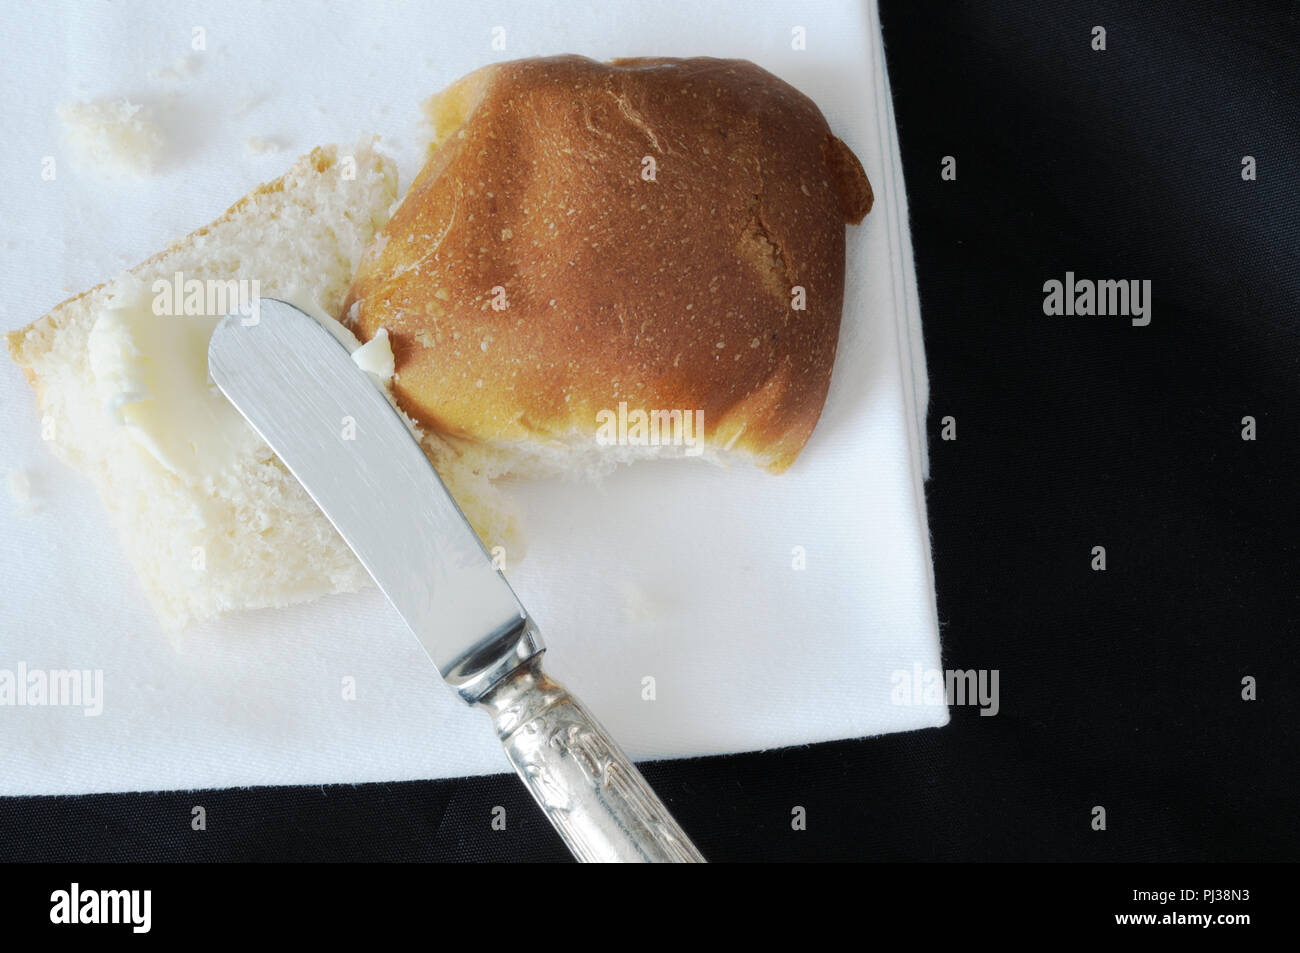 Vista dall'alto di un ricciolo di burro spalmato su un panino, su sfondo nero Foto Stock